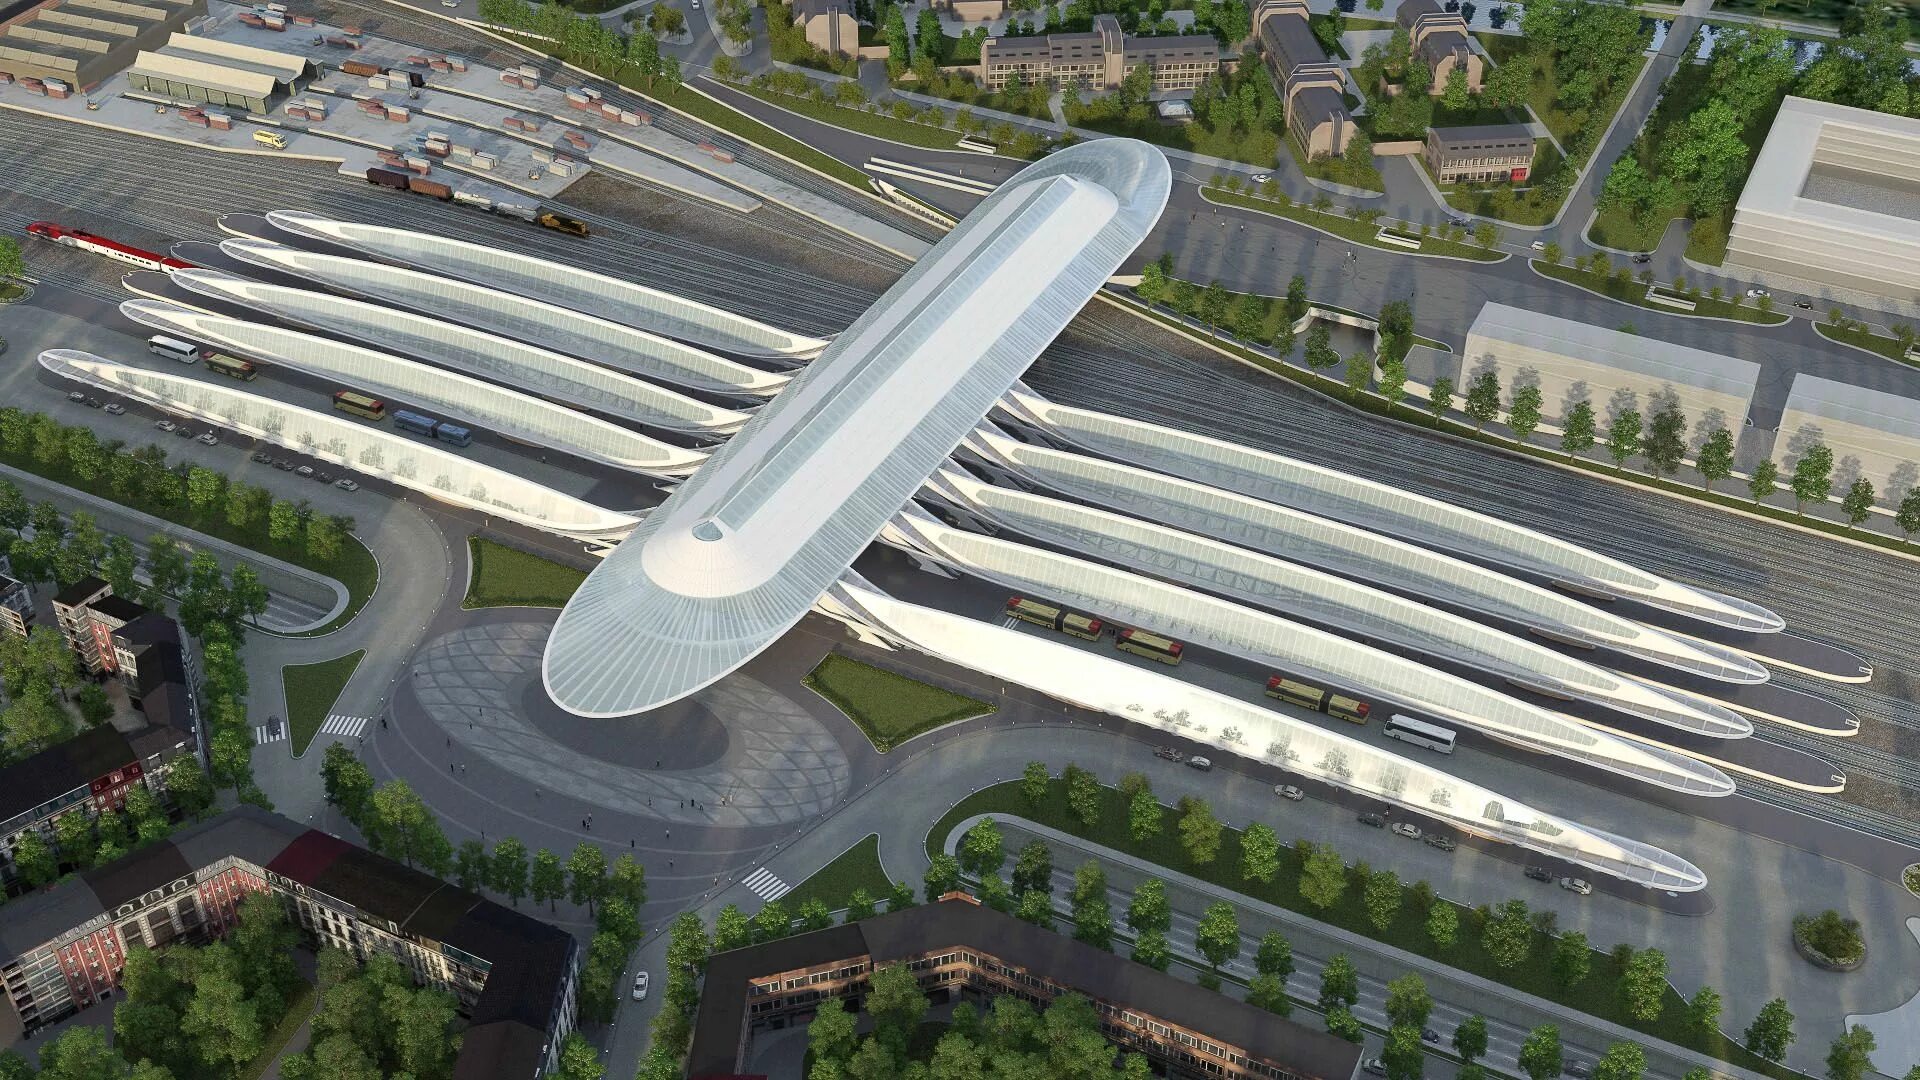 Проект будущего поколения. Проект Захи Хадид вокзал. Заха Хадид транспортно пересадочный узел. Калатрава Архитектор Сингапур. Вокзал будущего.